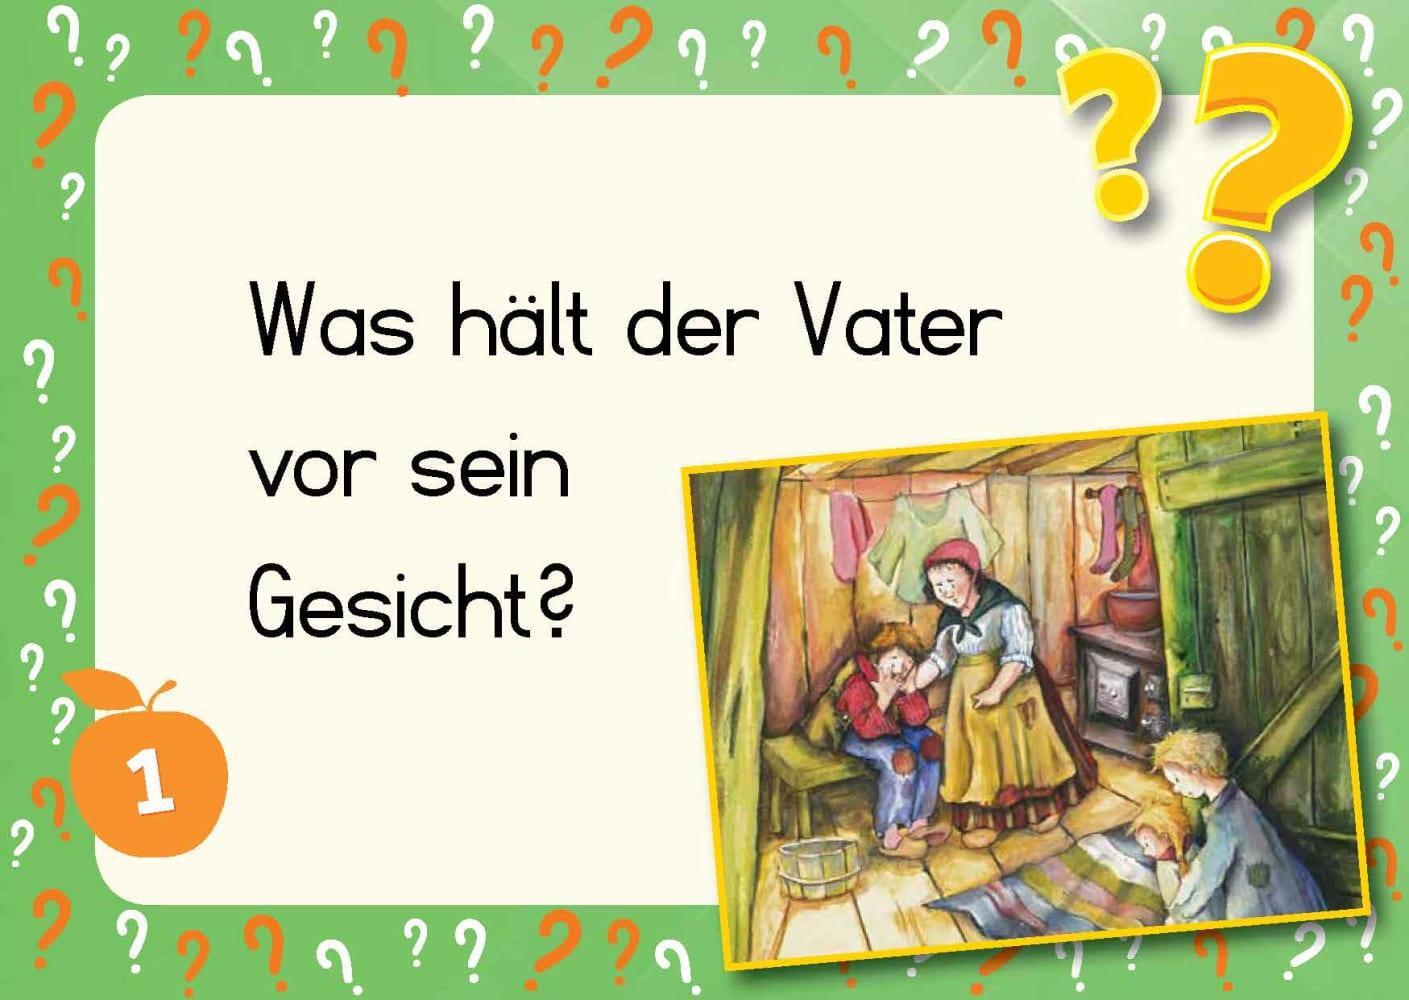 Bild: 4260179517402 | Kami-Quiz Märchen: Hänsel und Gretel | Helga Fell | Box | 34 S. | 2021